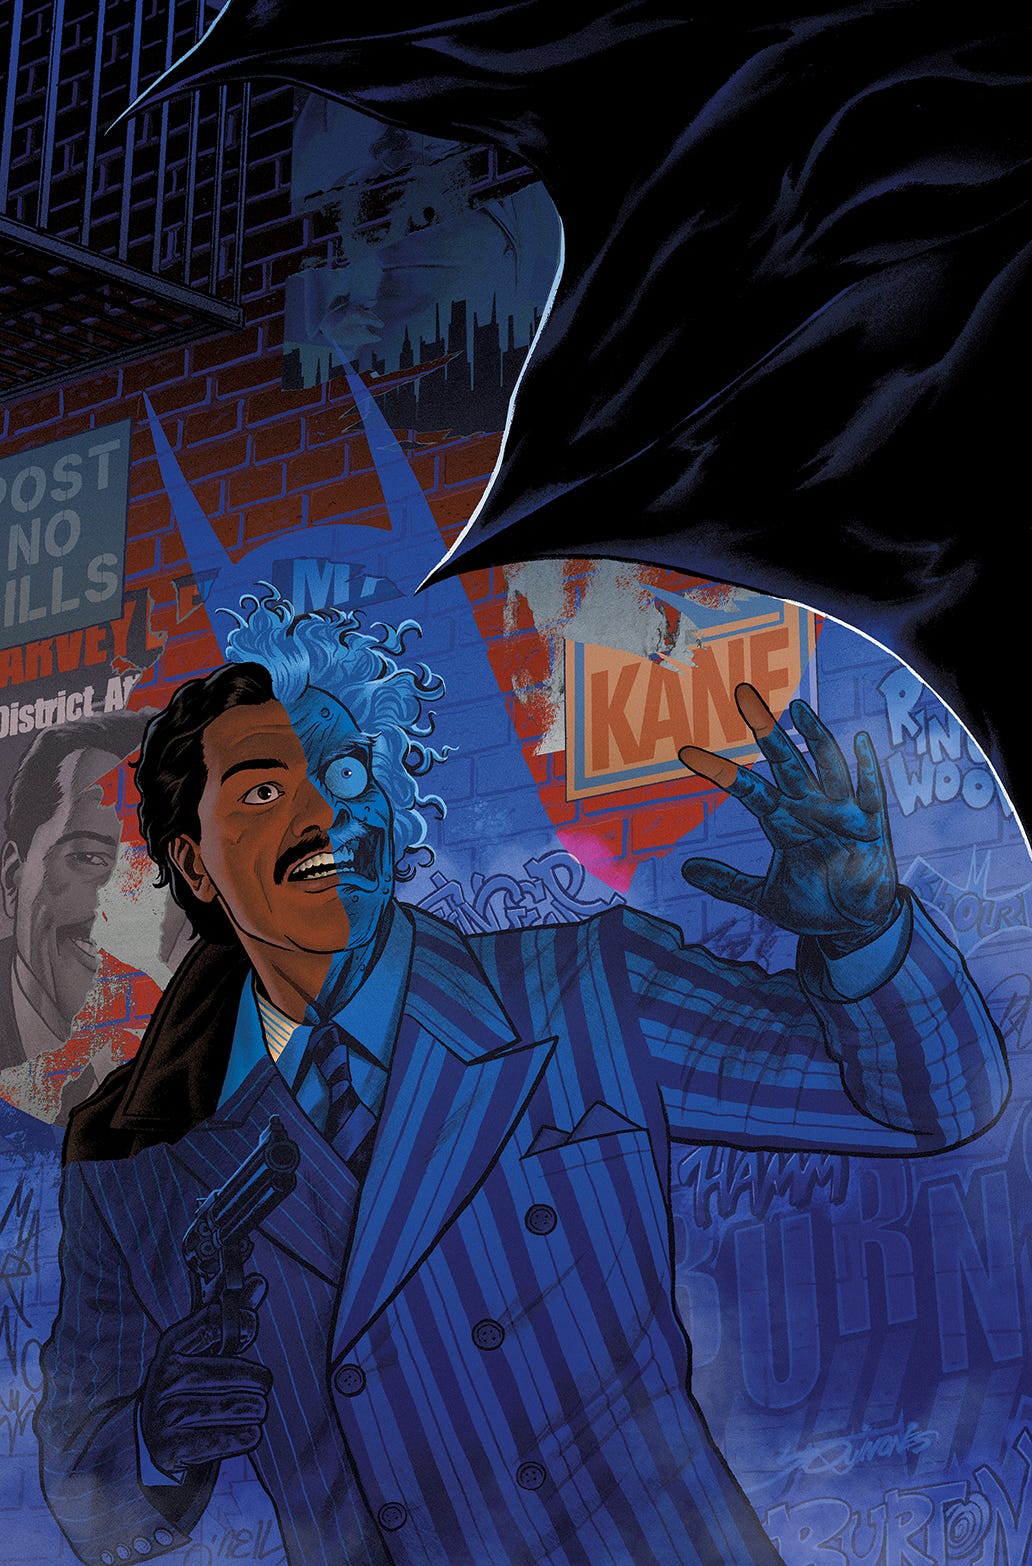 Batman 89 #2 (of 6) (Cover A - Joe Quinones)